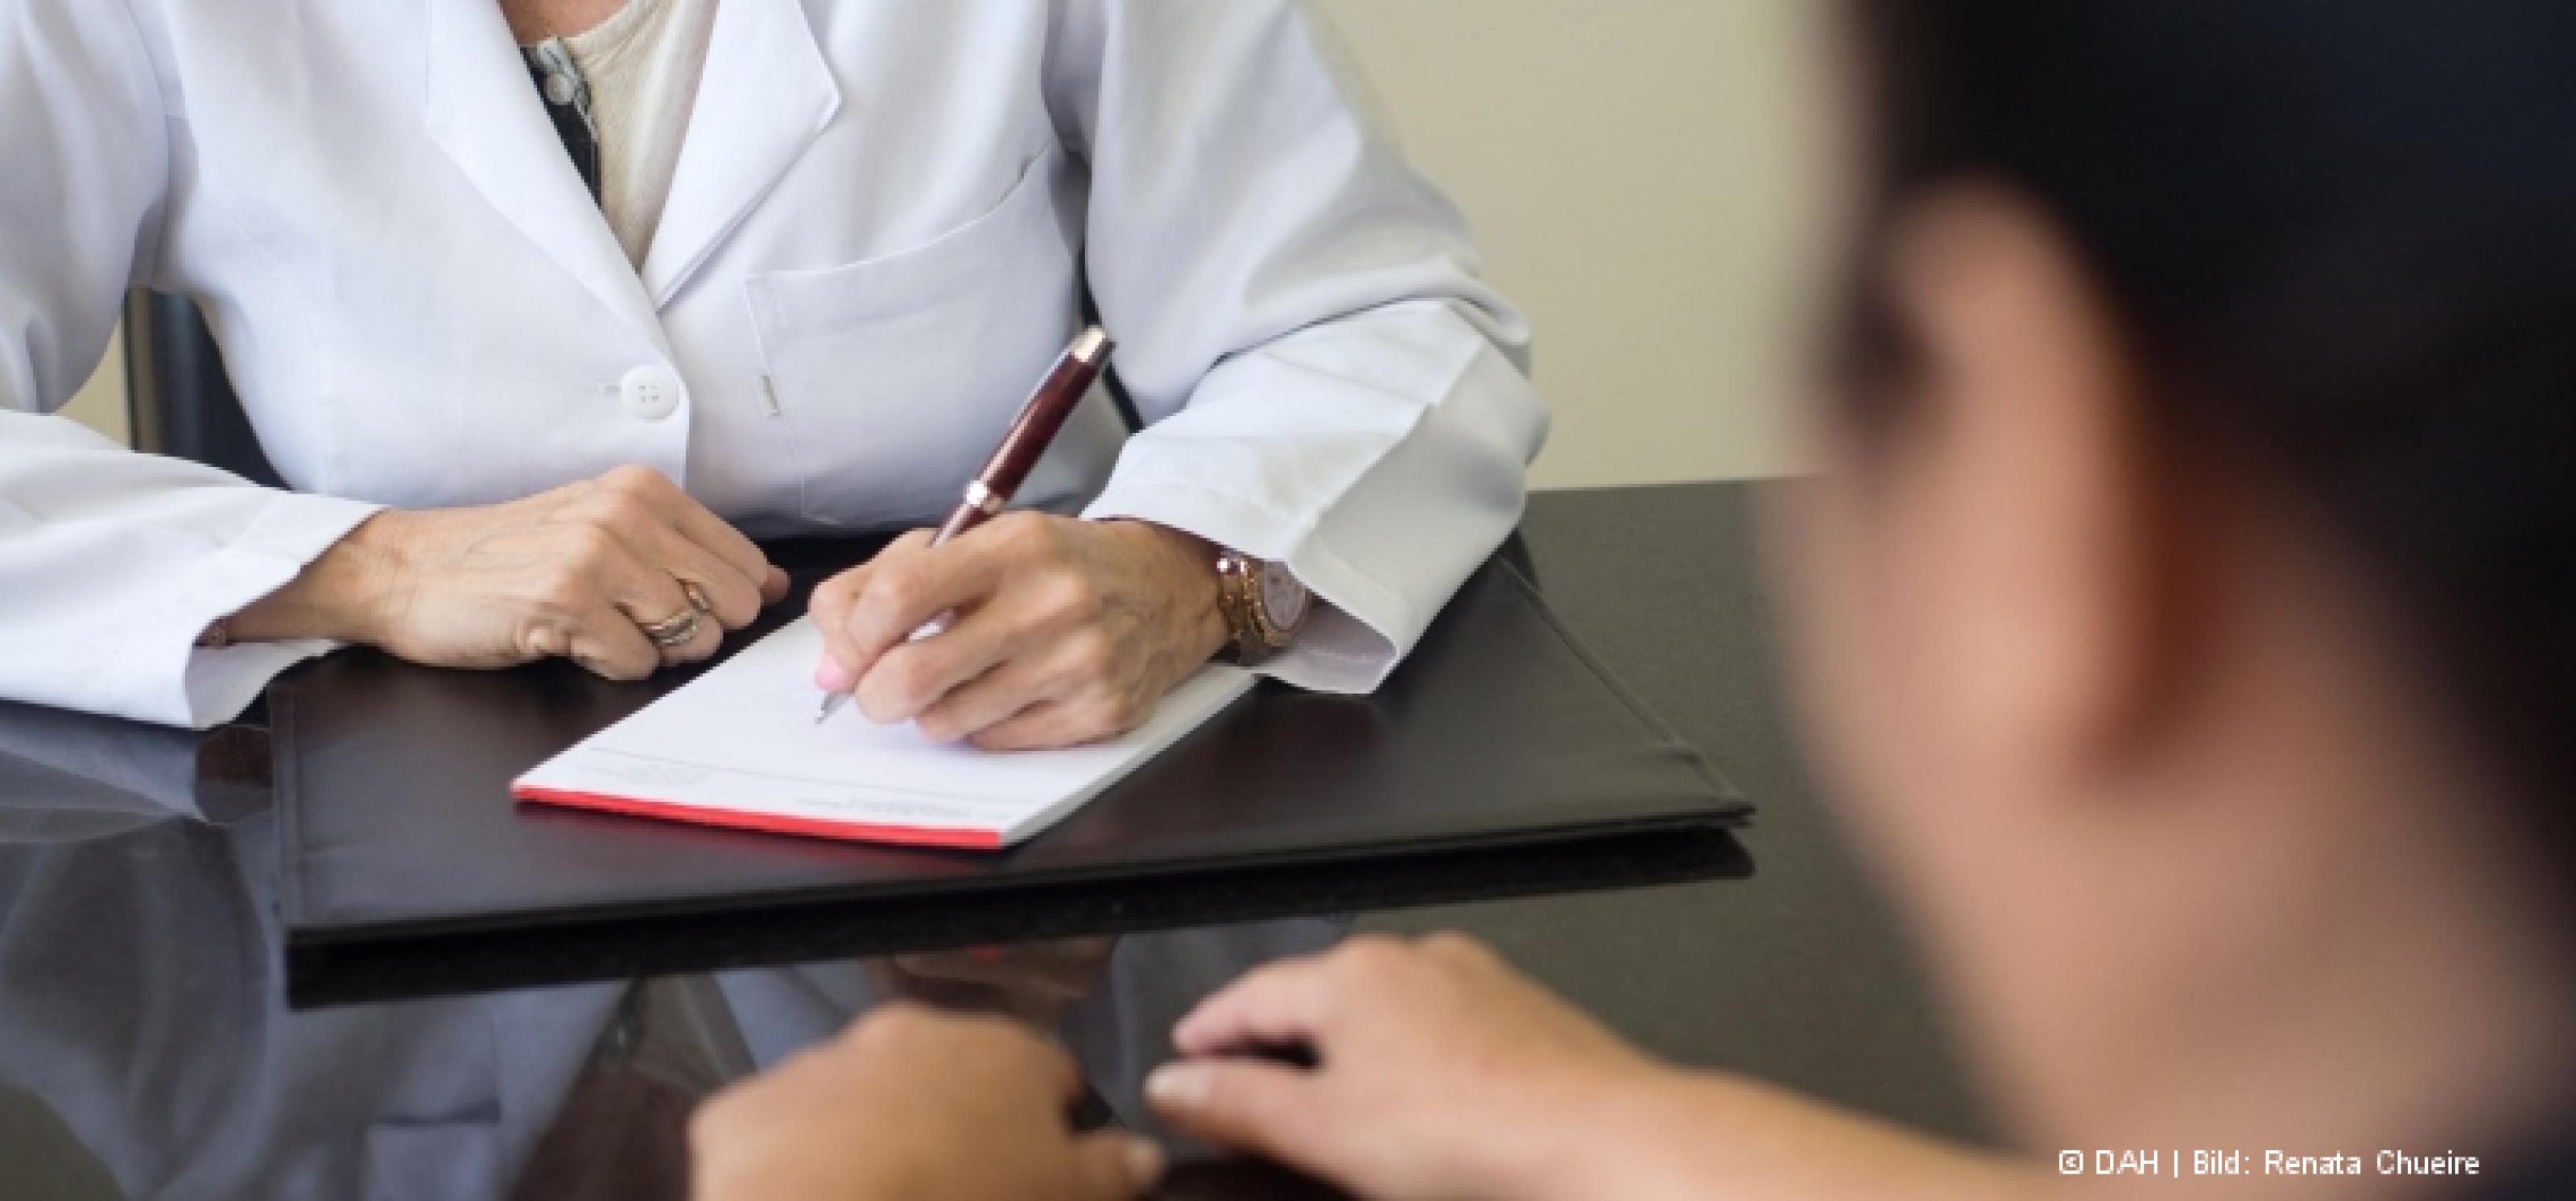 Eine Ärztin im weißen Kittel sitzt an ihrem Schreibtisch und macht sich Notizen auf einem Block, ihr gegenüber sitzt ein Patient